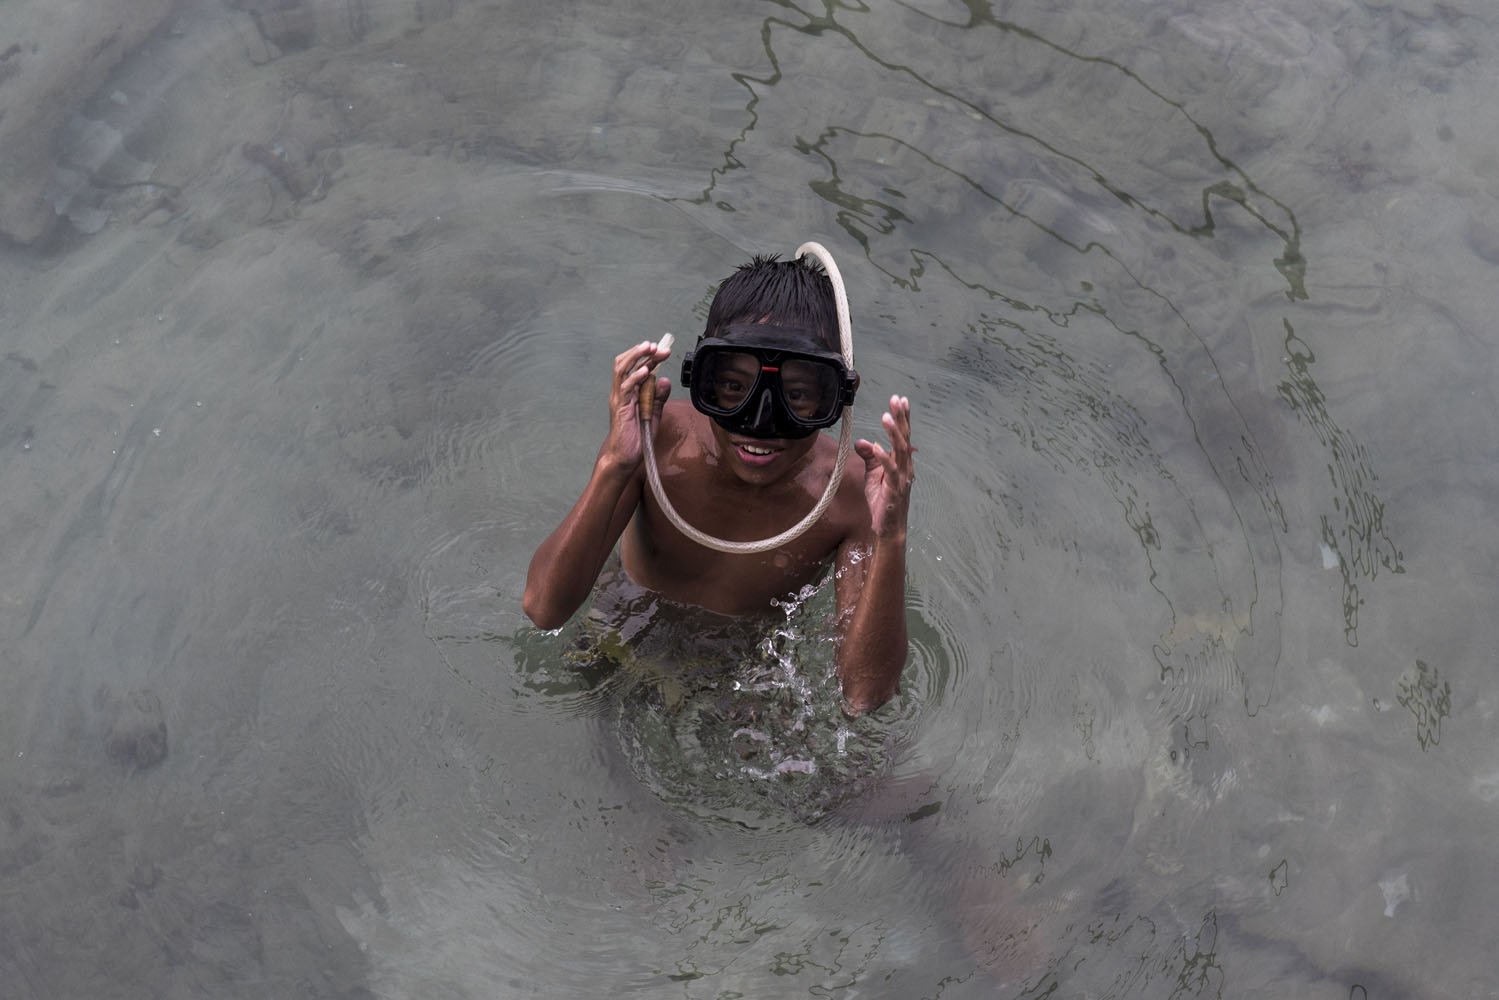 Seorang bocah menggunakan selang air saat berenang di perairan pulau Sedanau di Kabupaten Natuna, Kepulauan Riau, Rabu (2/8).